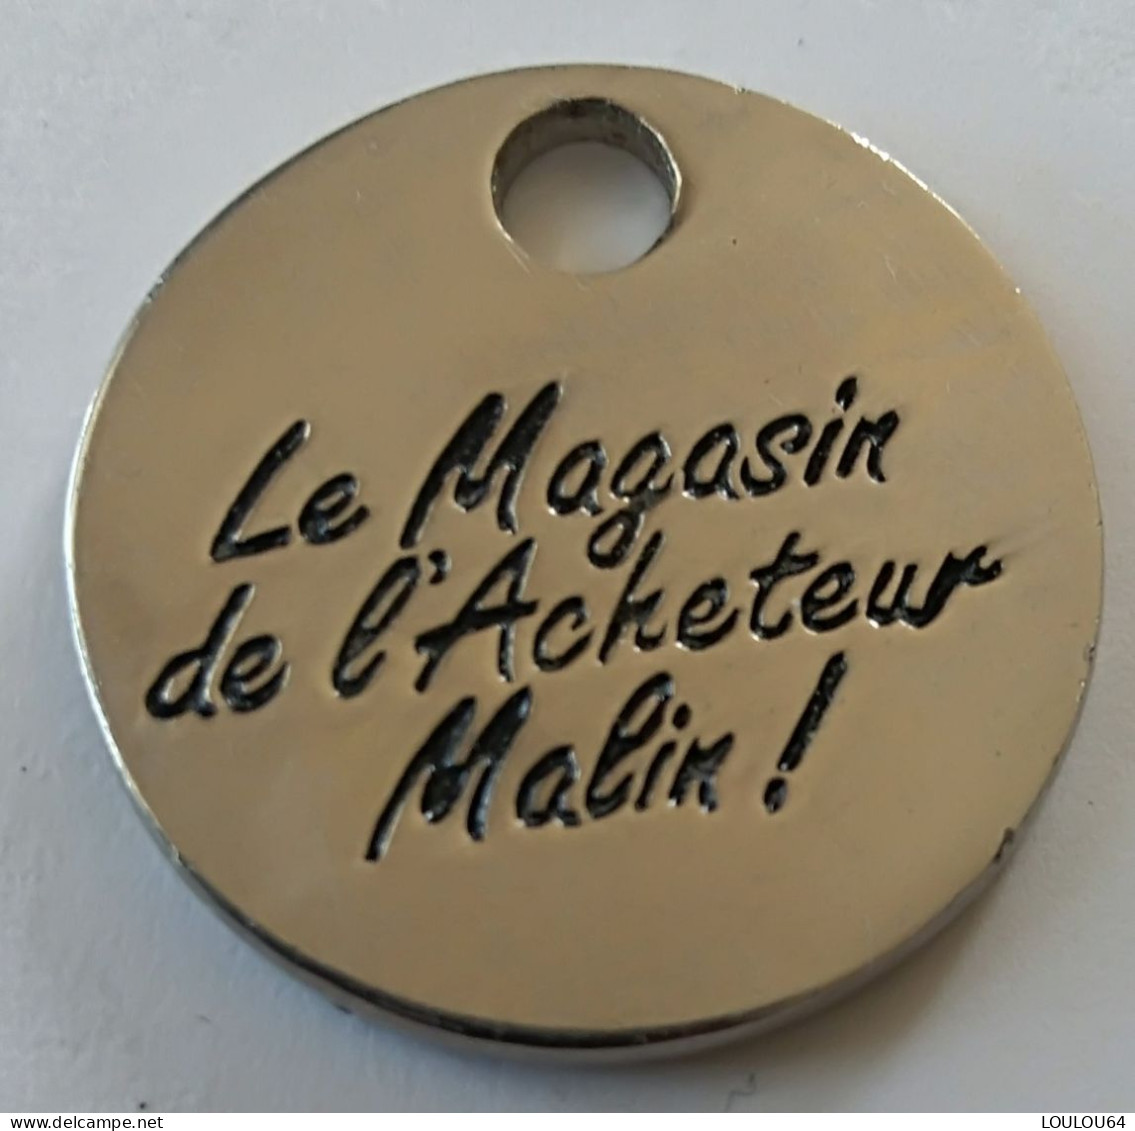 Jeton De Caddie - MDA - ELECTROMENAGER - Le Magasin De L'Acheteur Malin ! - En Métal - (1) - - Moneda Carro